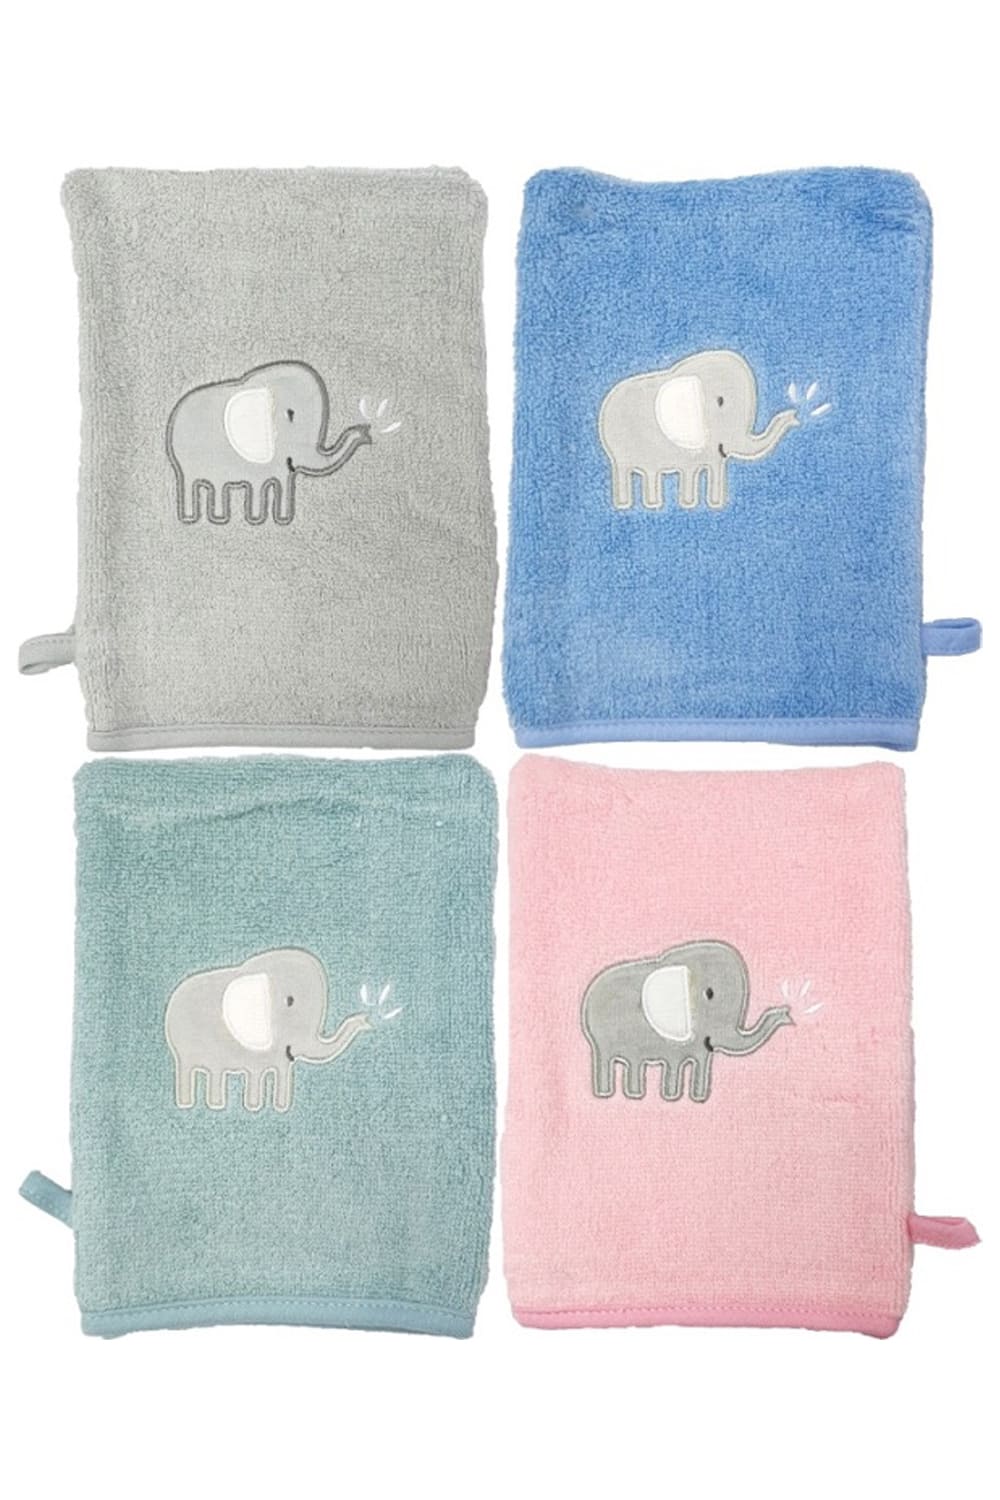 Dieser Waschhandschuhe Elefant im 2er-Set ist ideal einen großen Baby Badespass. Er besteht aus hochwertiger Baumwolle und ist besonders angenehm auf der Baby Haut. Vier diverse Farben stehen zur Auswahl (blau, rosa, gruen, grau). Einfach ein tolles und praktisches Babygeschenk. 